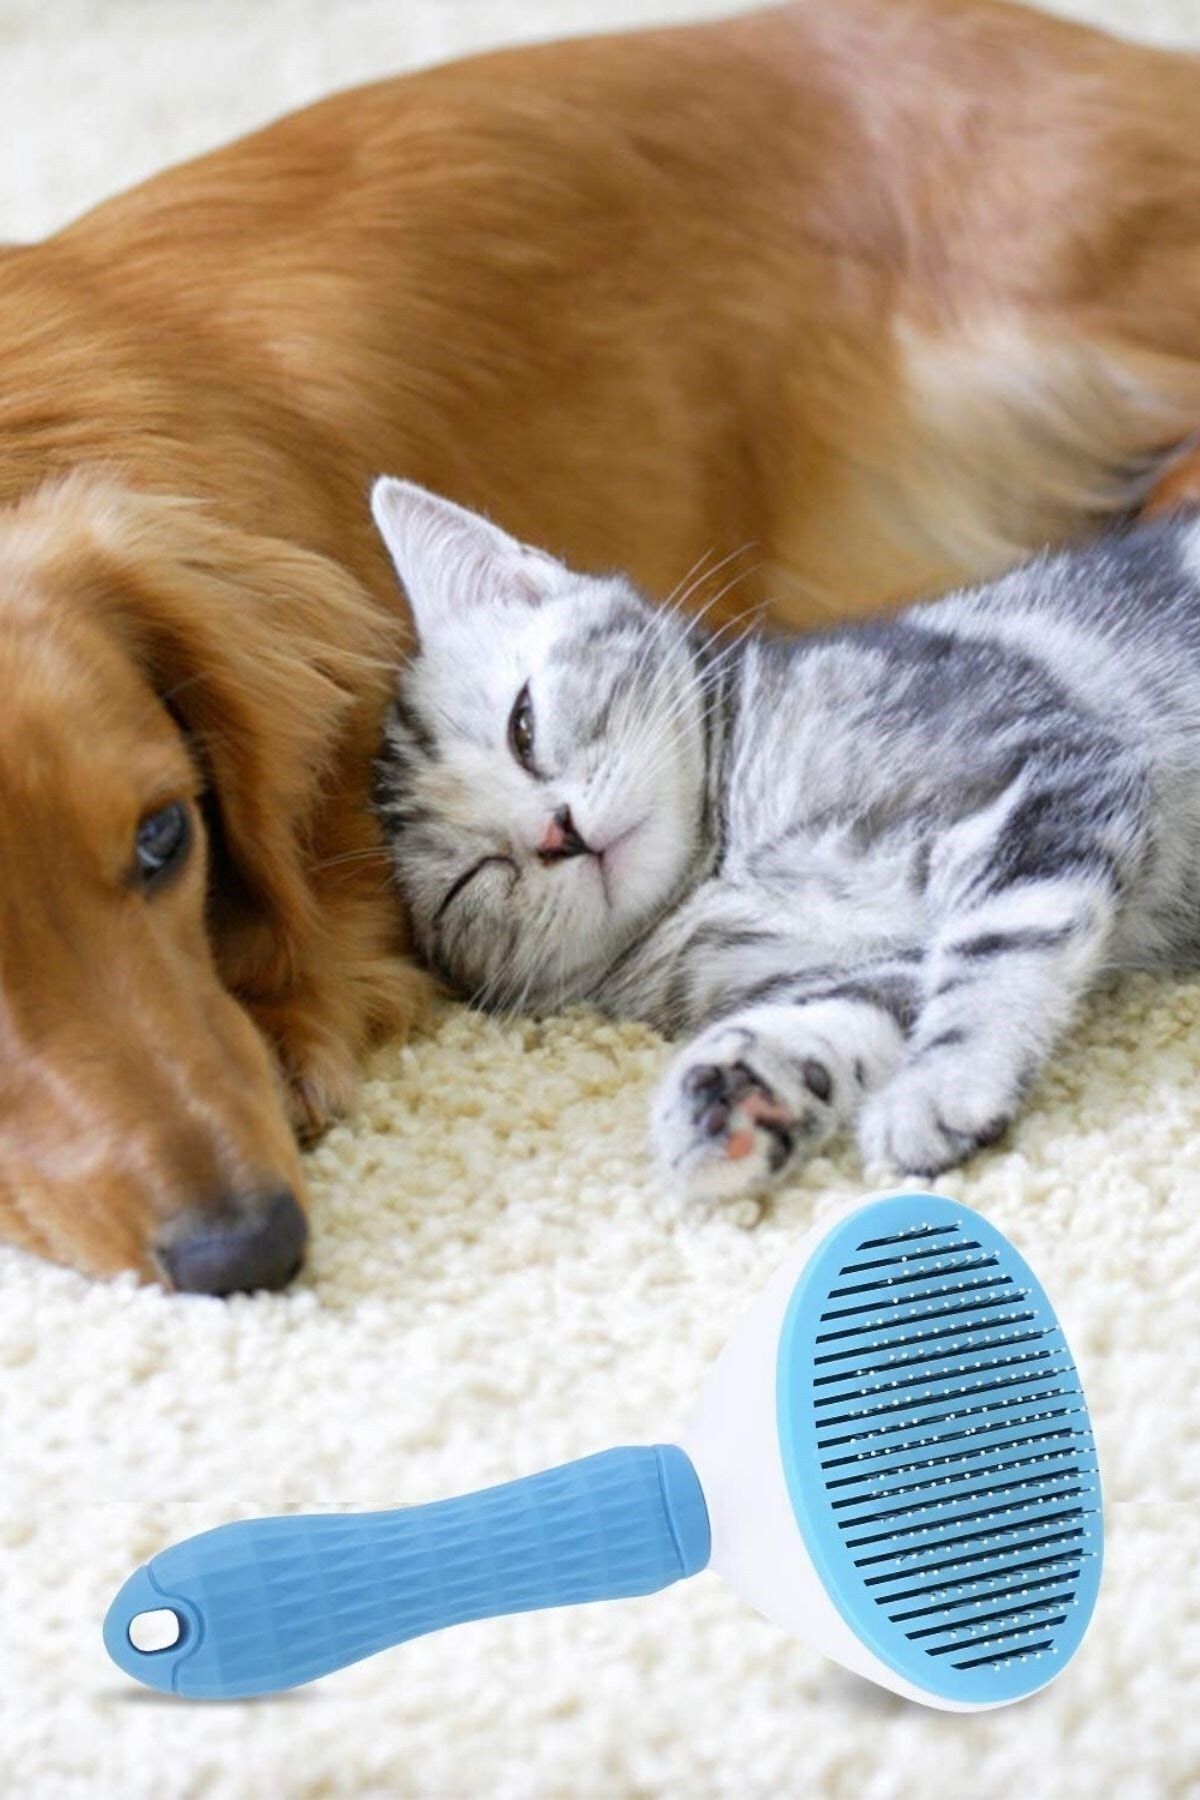 Kedi Köpek Tüy Toplayıcı Kendini Temizleyebilen Ergonomik Saplı Evcil Hayvan Tarağı Mavi